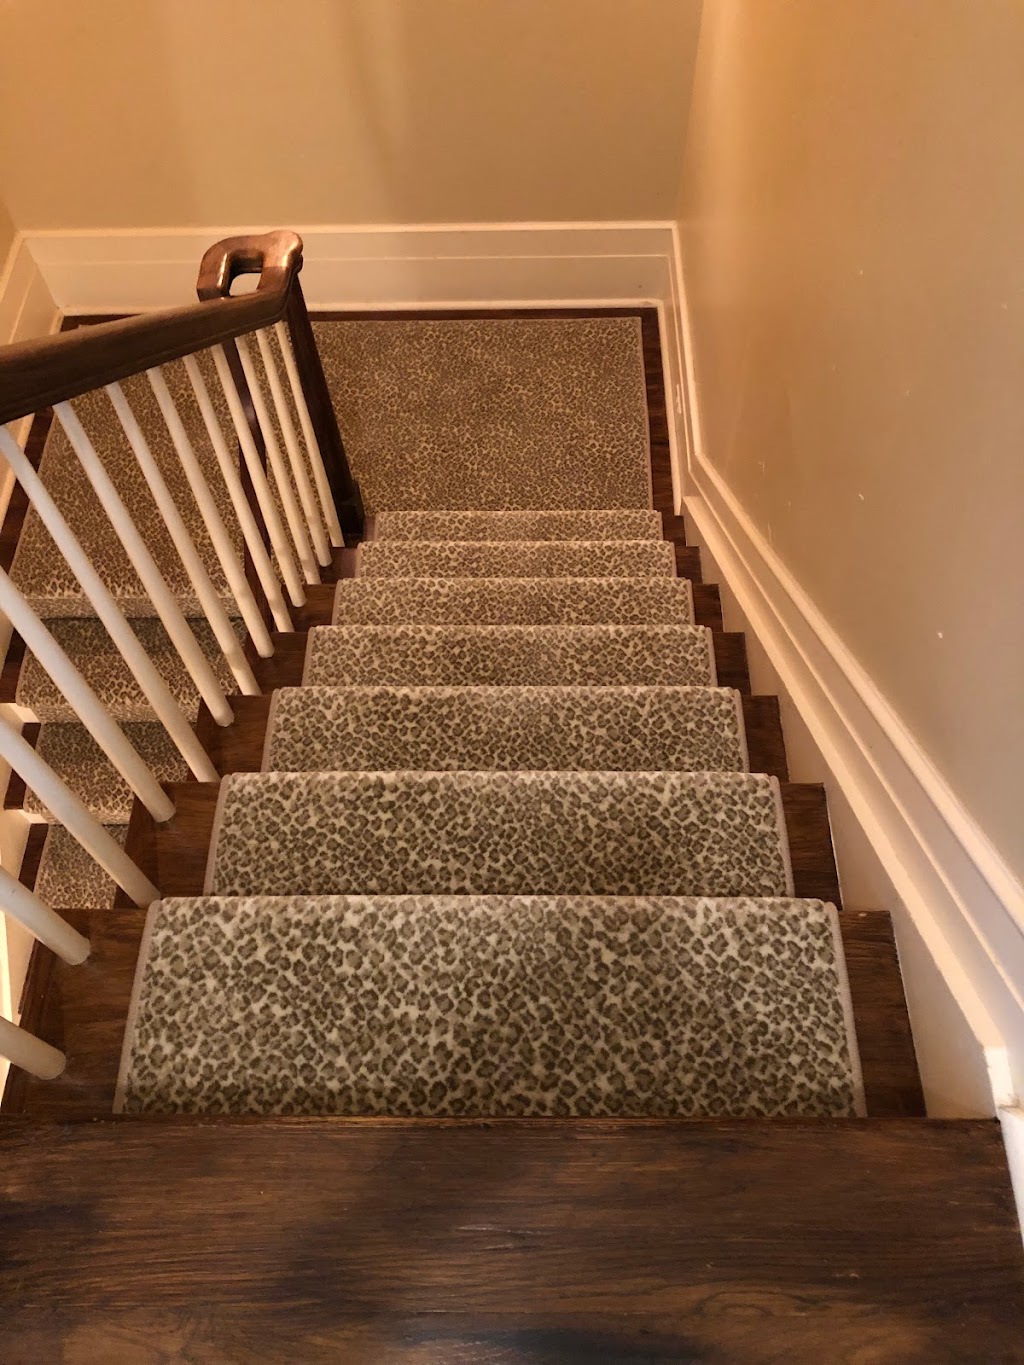 Hamptons Carpet One Floor & Home | 675 N Sea Rd, Southampton, NY 11968 | Phone: (631) 876-1035